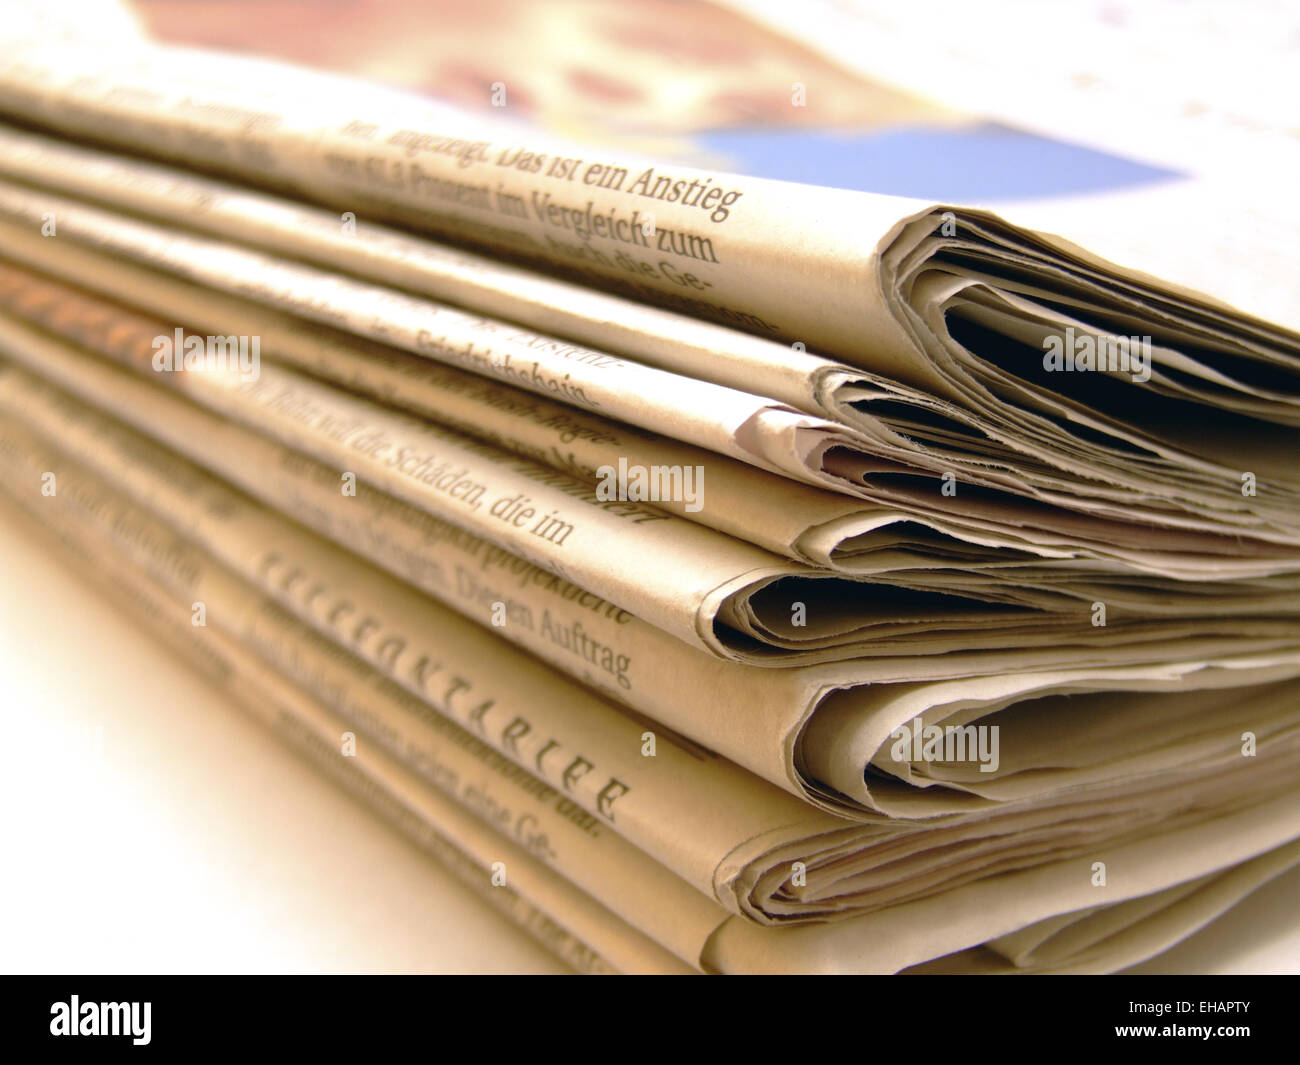 Stapel Zeitungen / newspapers Stock Photo